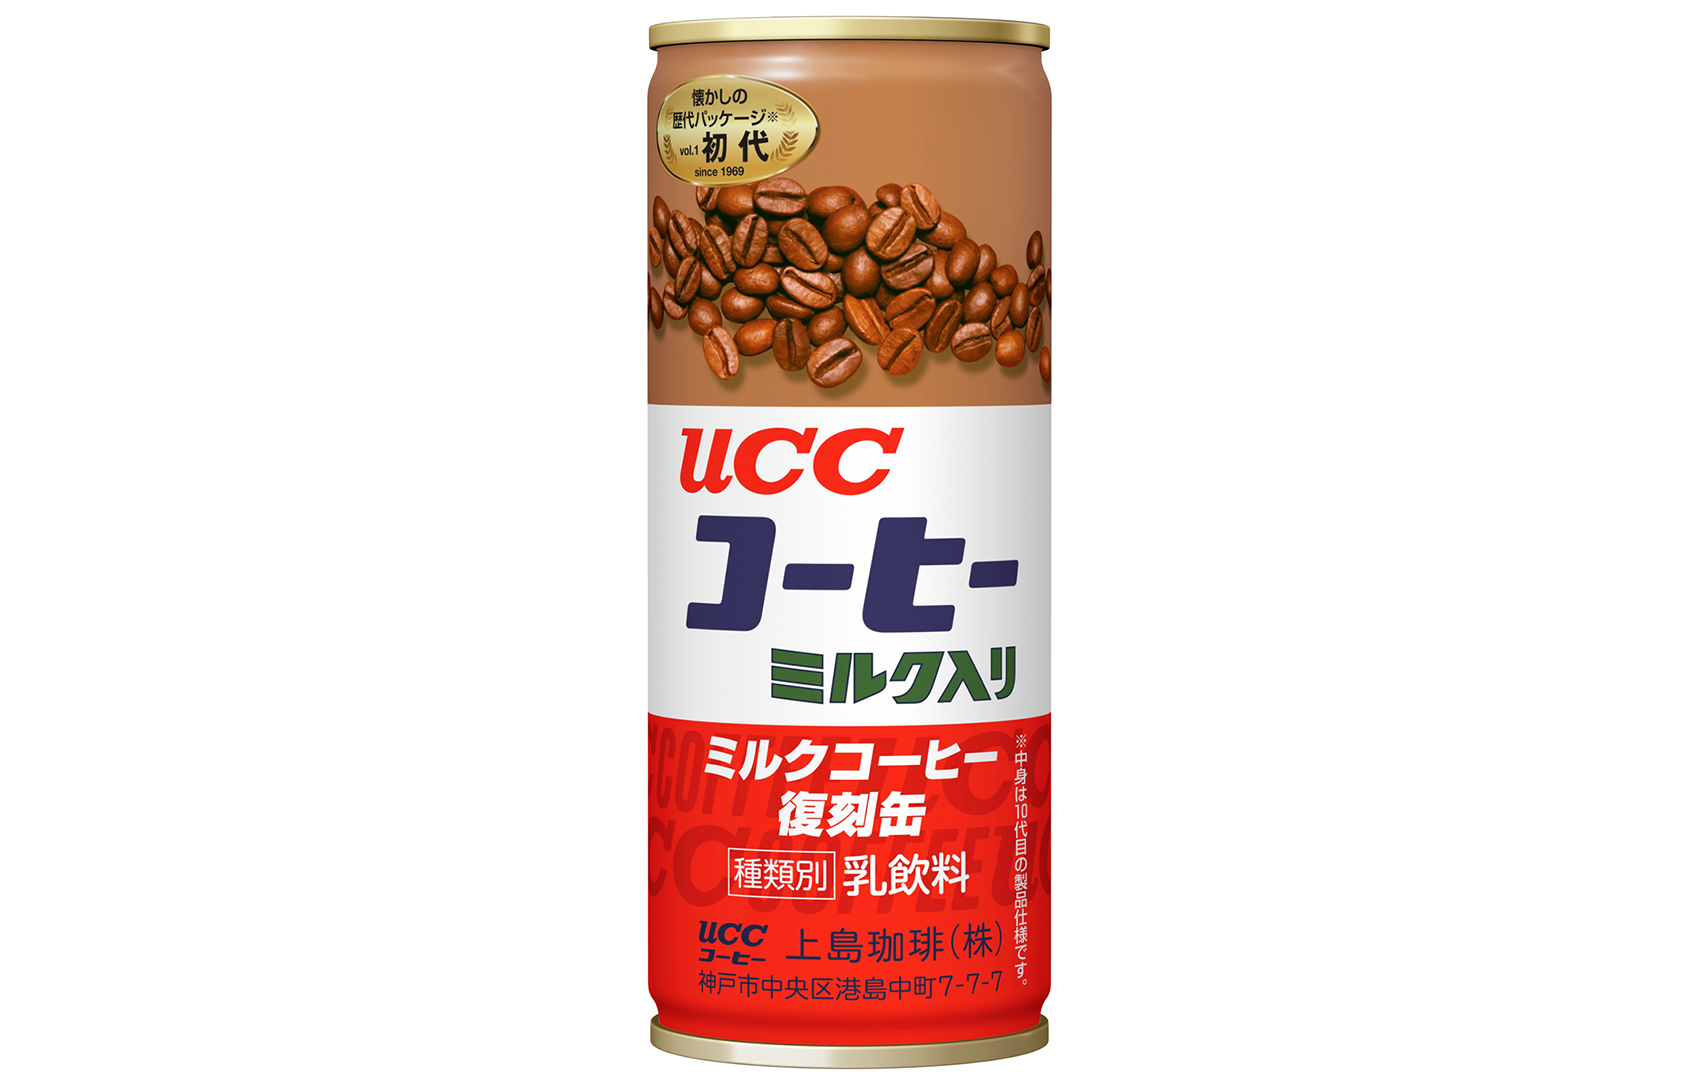 世界初の缶コーヒー Ucc ミルクコーヒー 誕生50周年記念歴代パッケージを振り返る復刻デザイン缶を数量限定発売 7月1日 月 より4種類の復刻デザイン 缶を全国で発売 コーヒーはucc上島珈琲